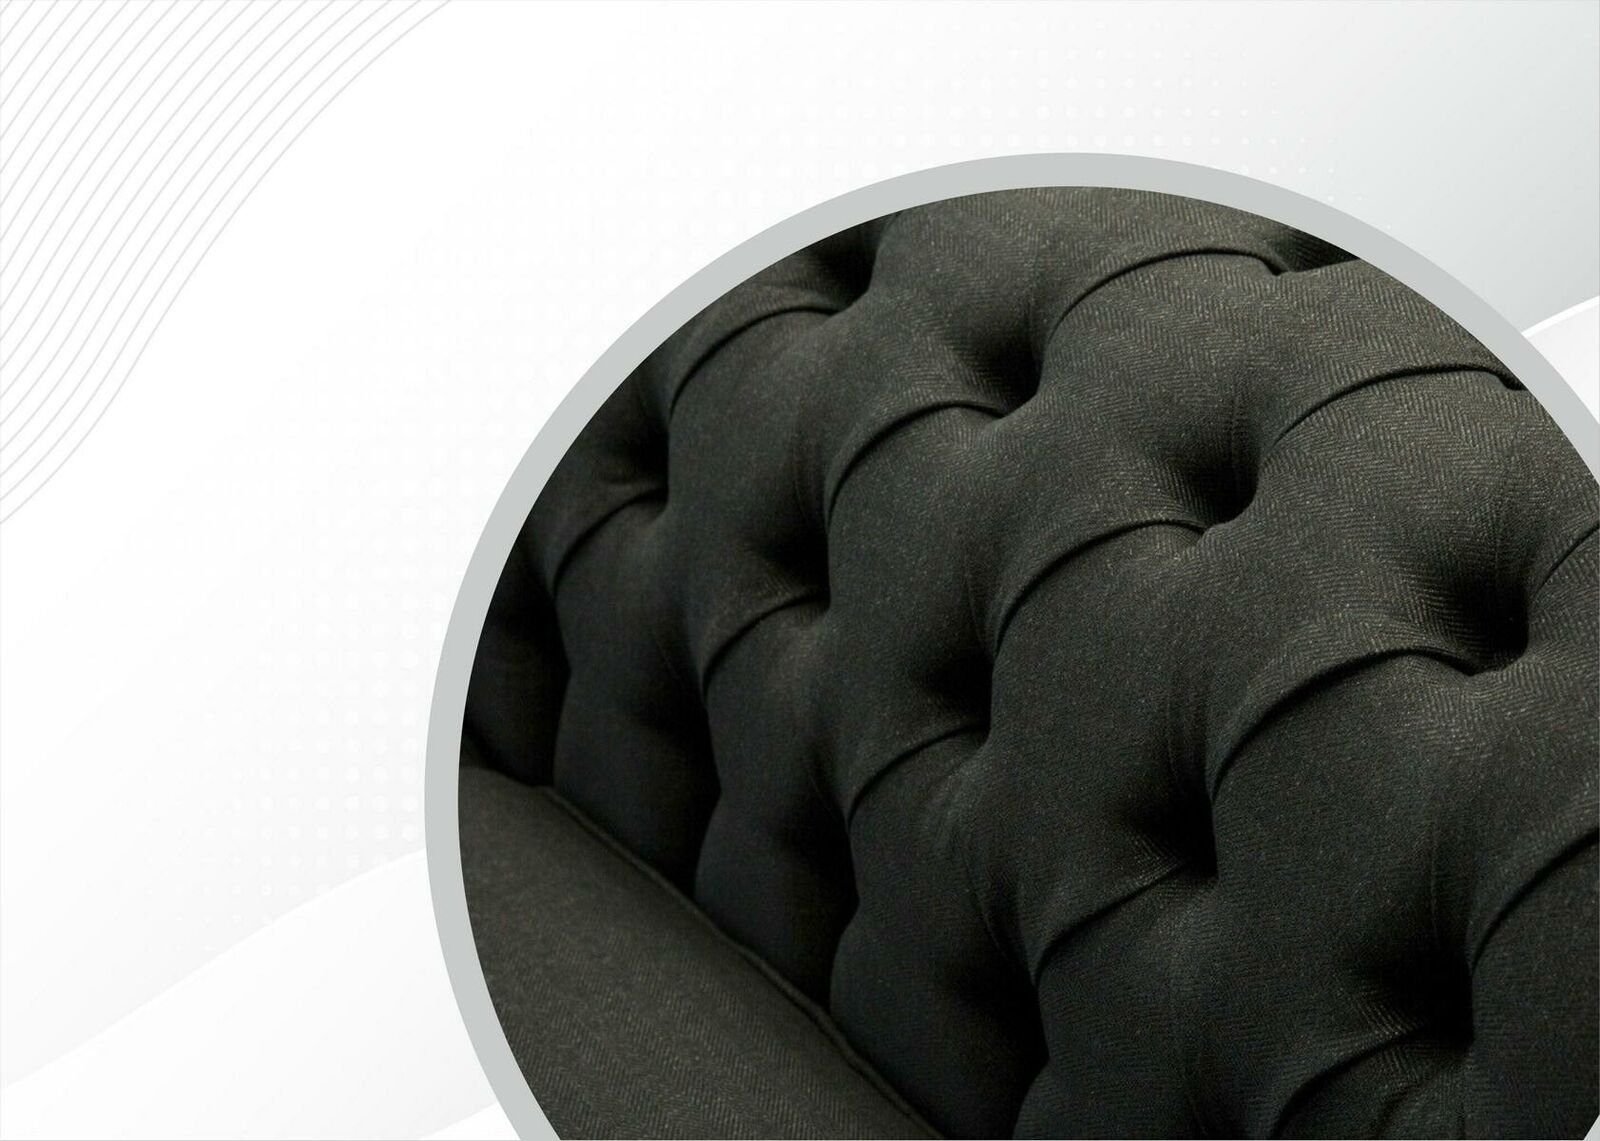 Dreisitzer in Dunkelgrauer Chesterfield Chesterfield-Sofa 3-Sitzer Möbel Neu, Made luxus JVmoebel Europe